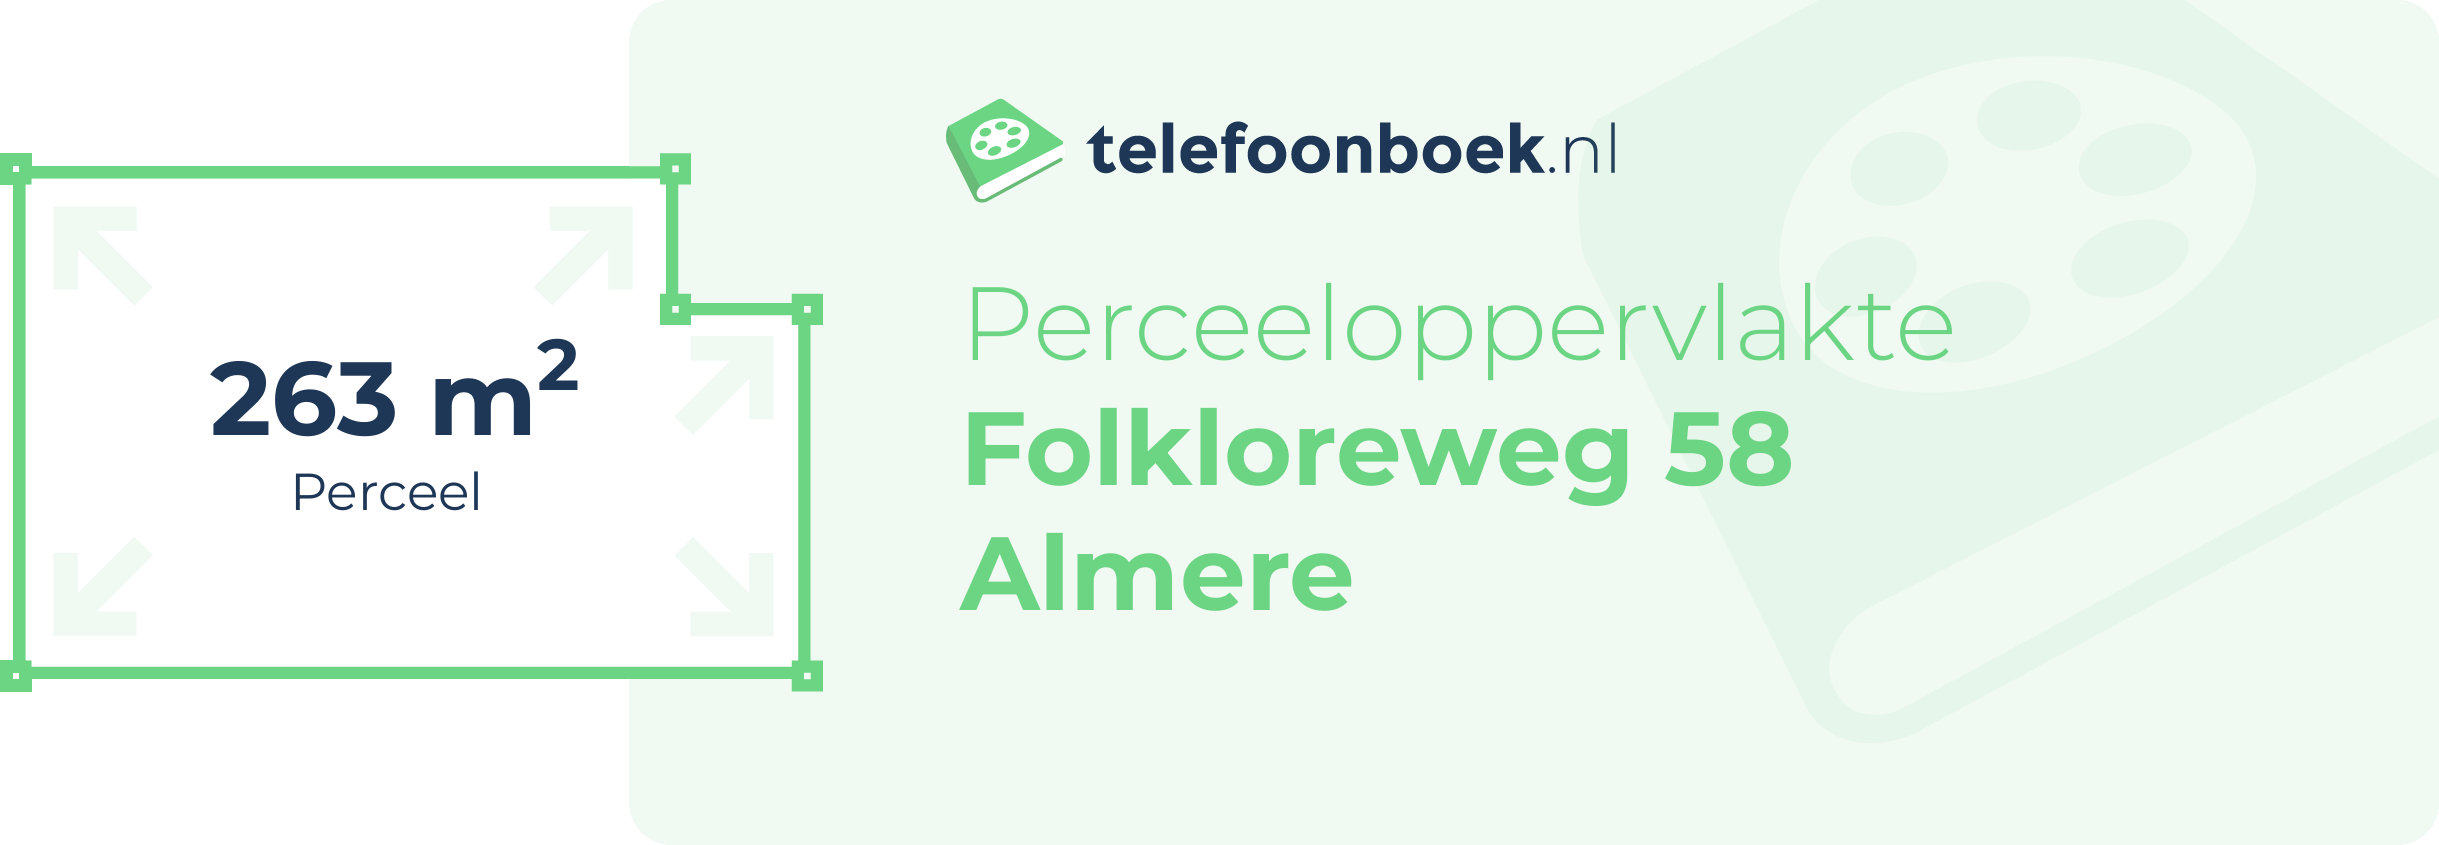 Perceeloppervlakte Folkloreweg 58 Almere